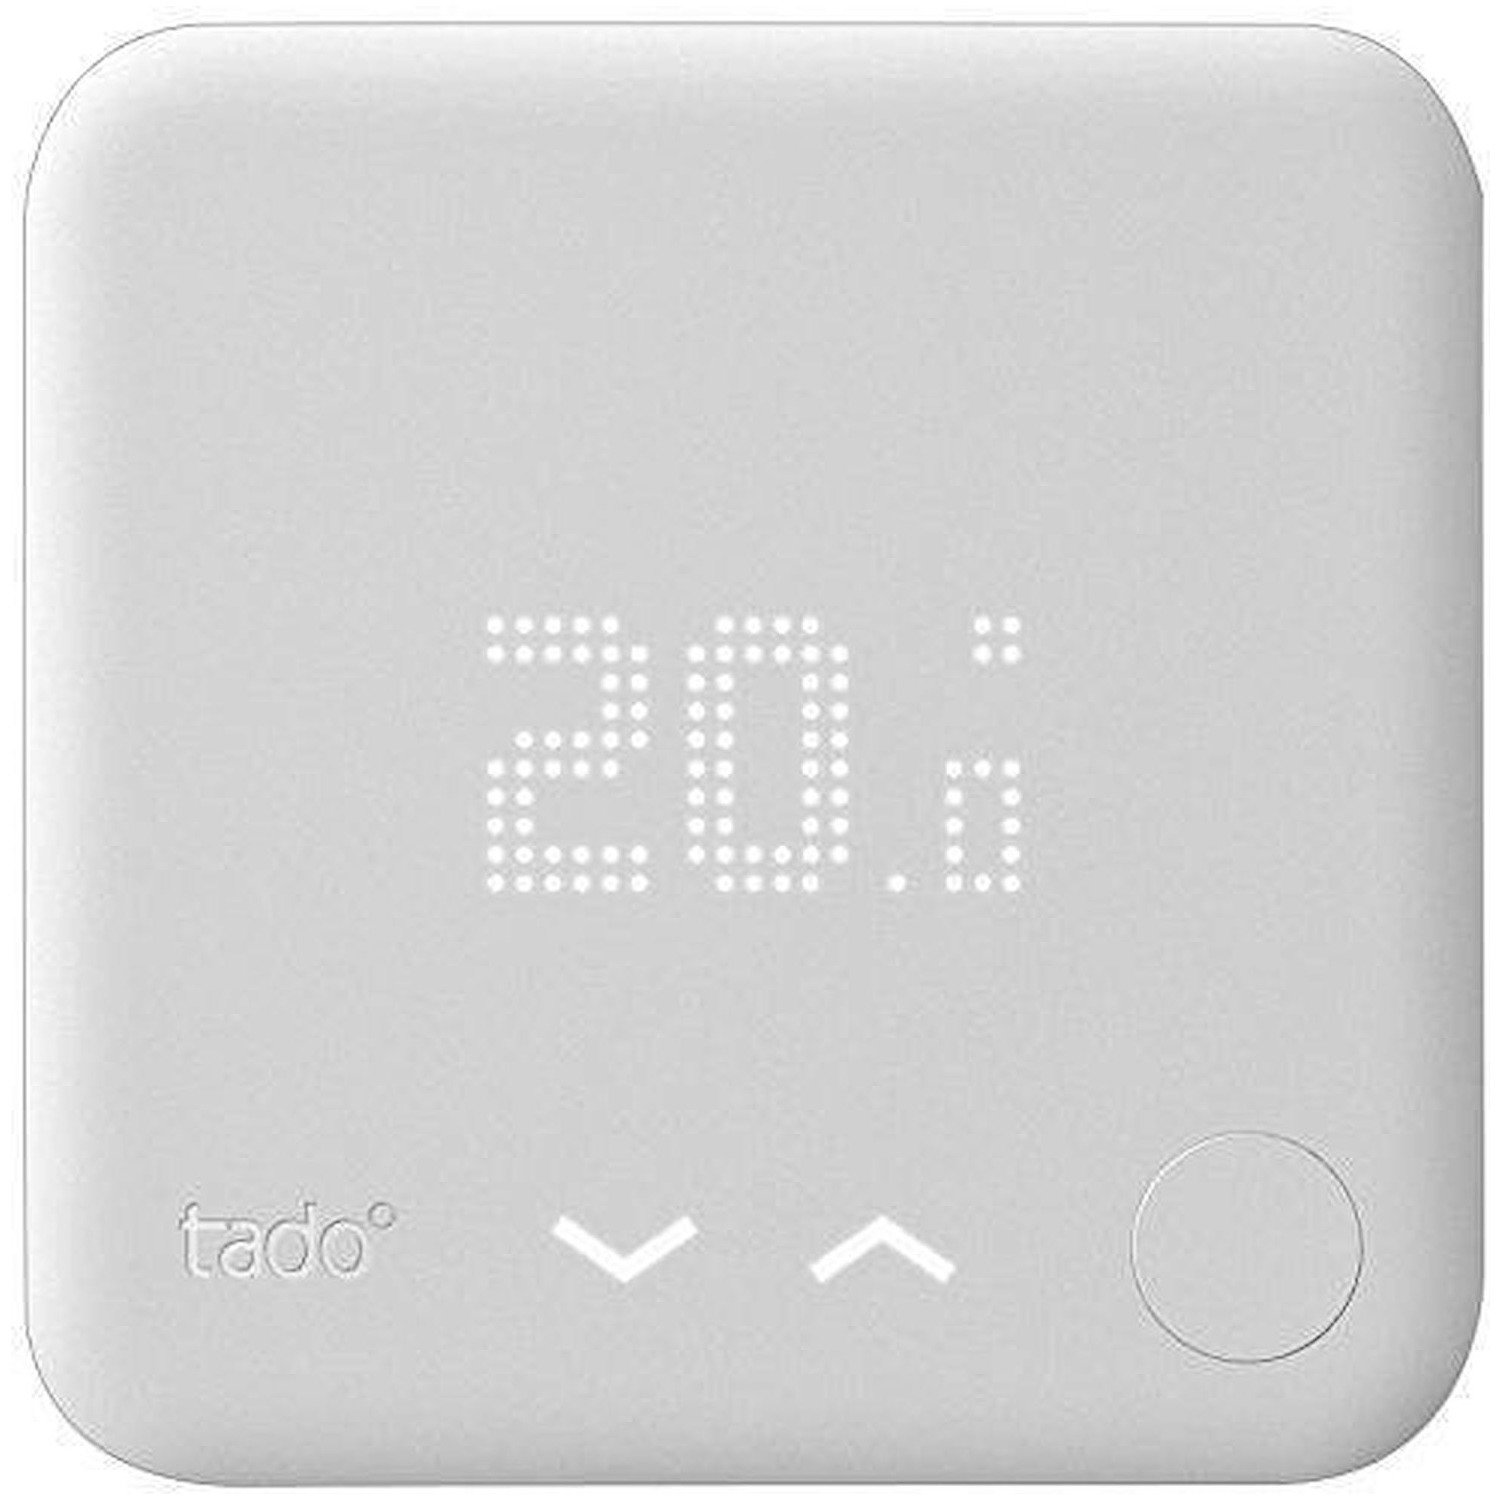 Il termostato intelligente Tado arriva in Italia. Prima di Nest